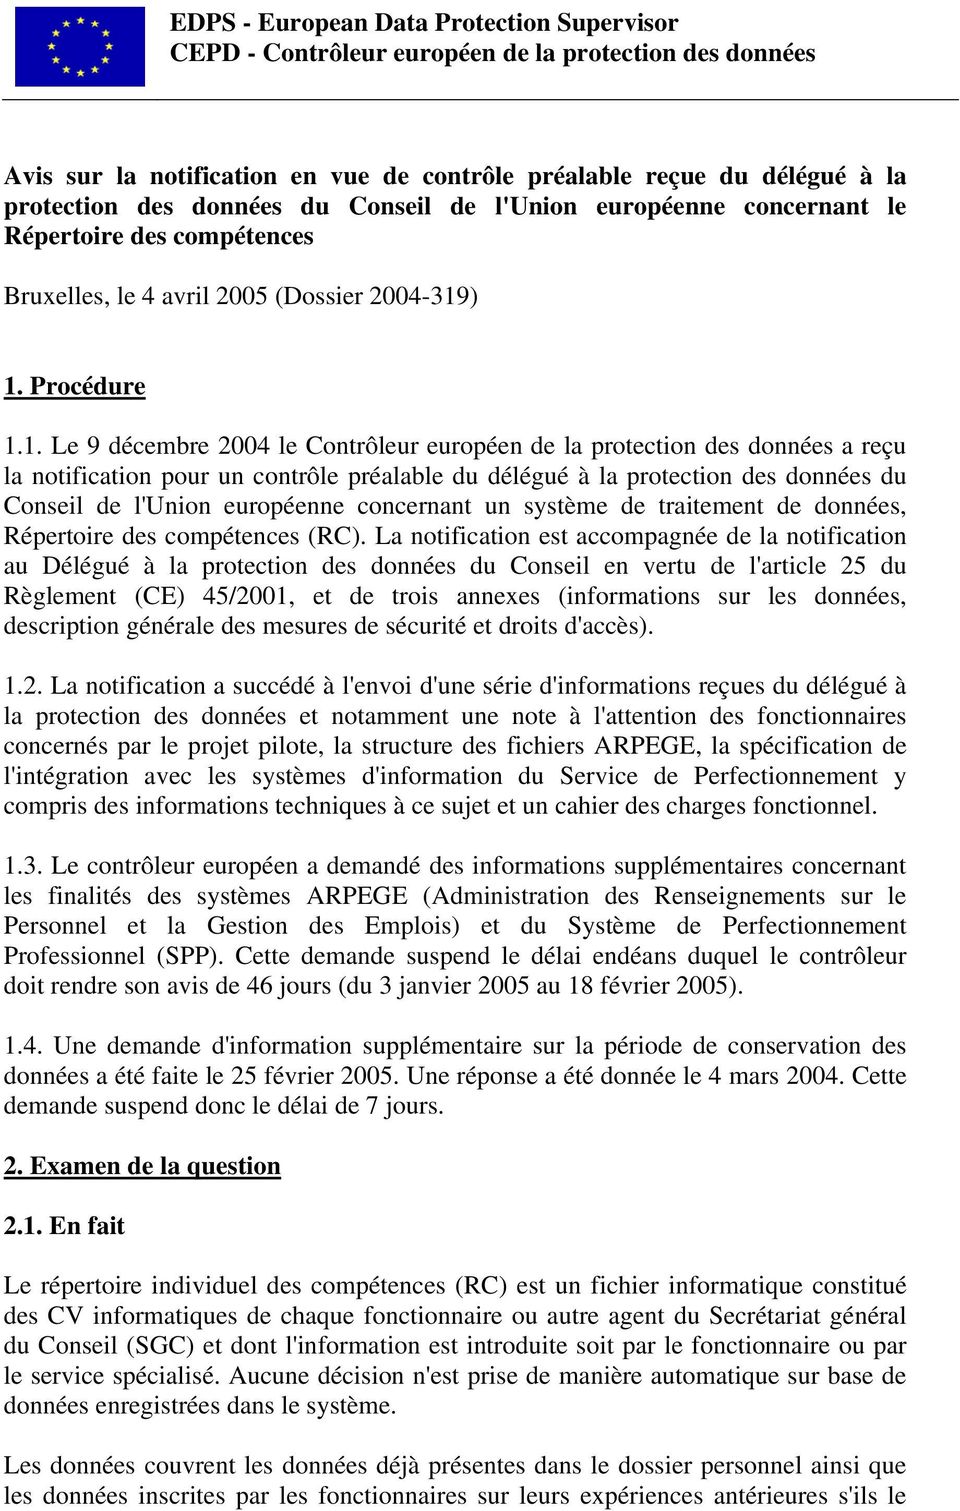 ) 1. Procédure 1.1. Le 9 décembre 2004 le Contrôleur européen de la protection des données a reçu la notification pour un contrôle préalable du délégué à la protection des données du Conseil de